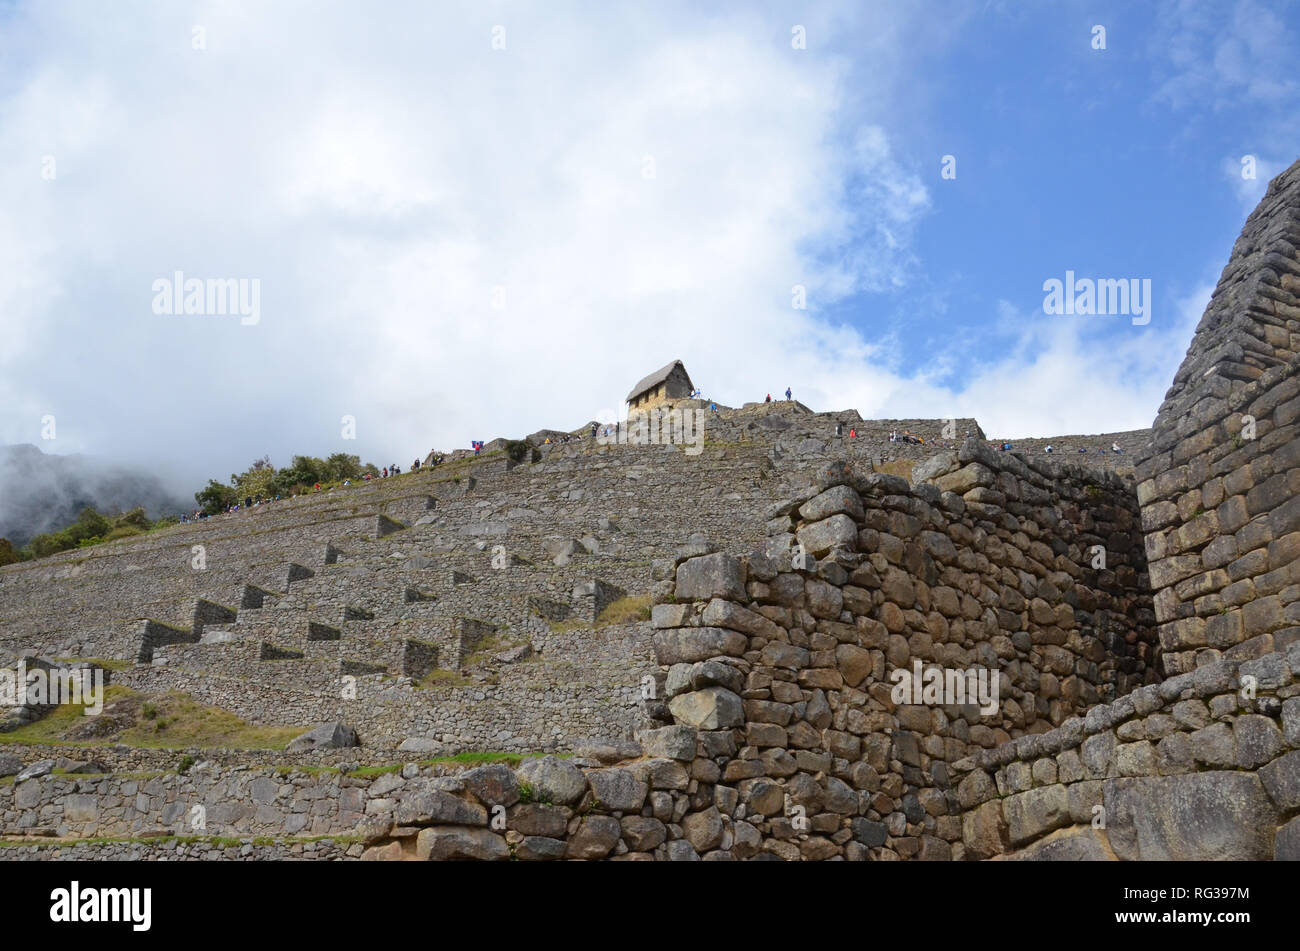 MACHU PICCHU / PERU, August 16, 2018: View up the terraces in the Machu Picchu ruins Stock Photo